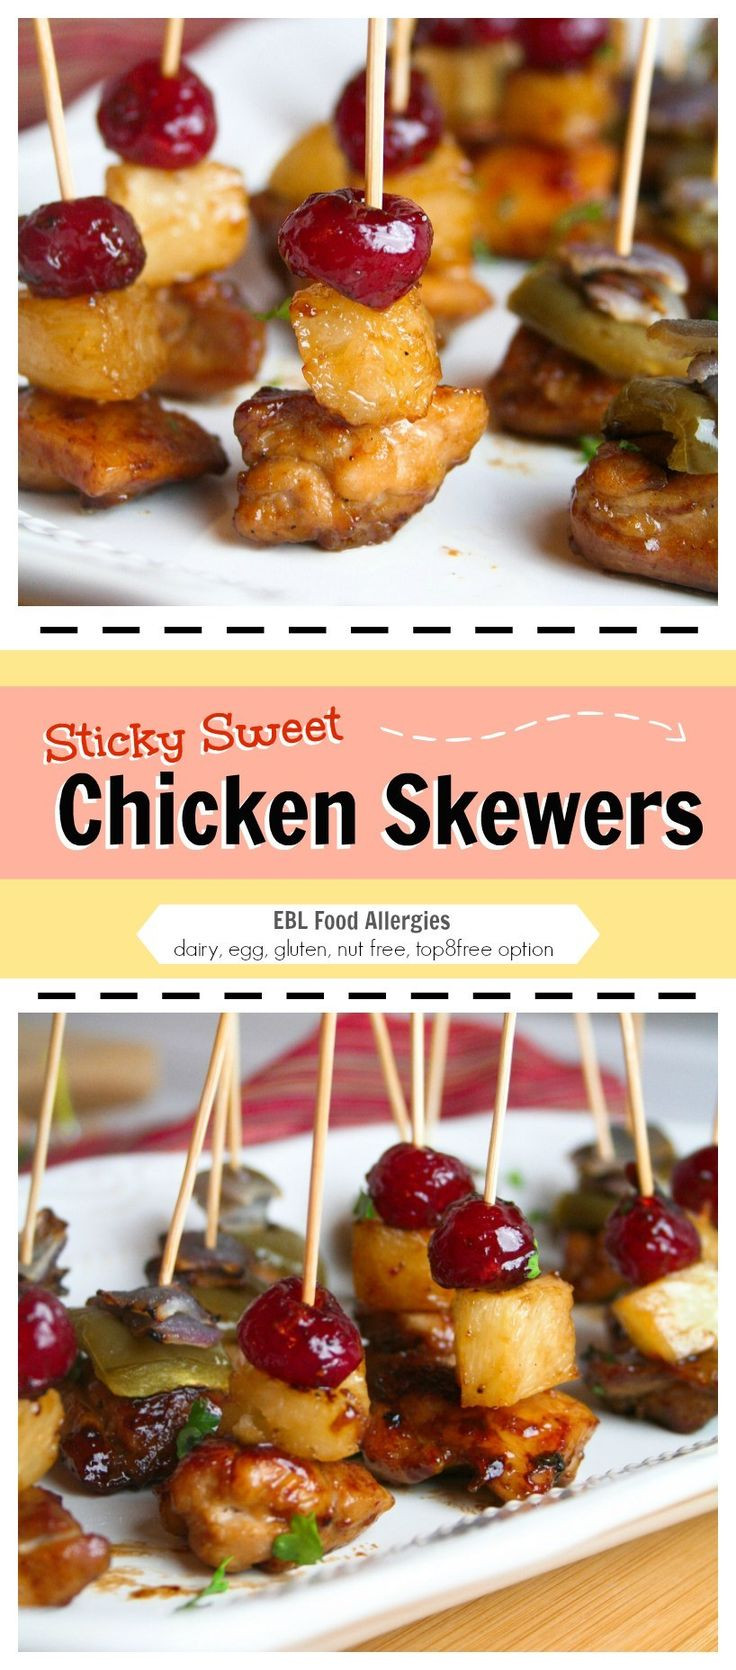 Gluten Free Appetizers to Buy Beautiful Sticky Sweet Chicken Appetizer Dairy Nut Egg Gluten